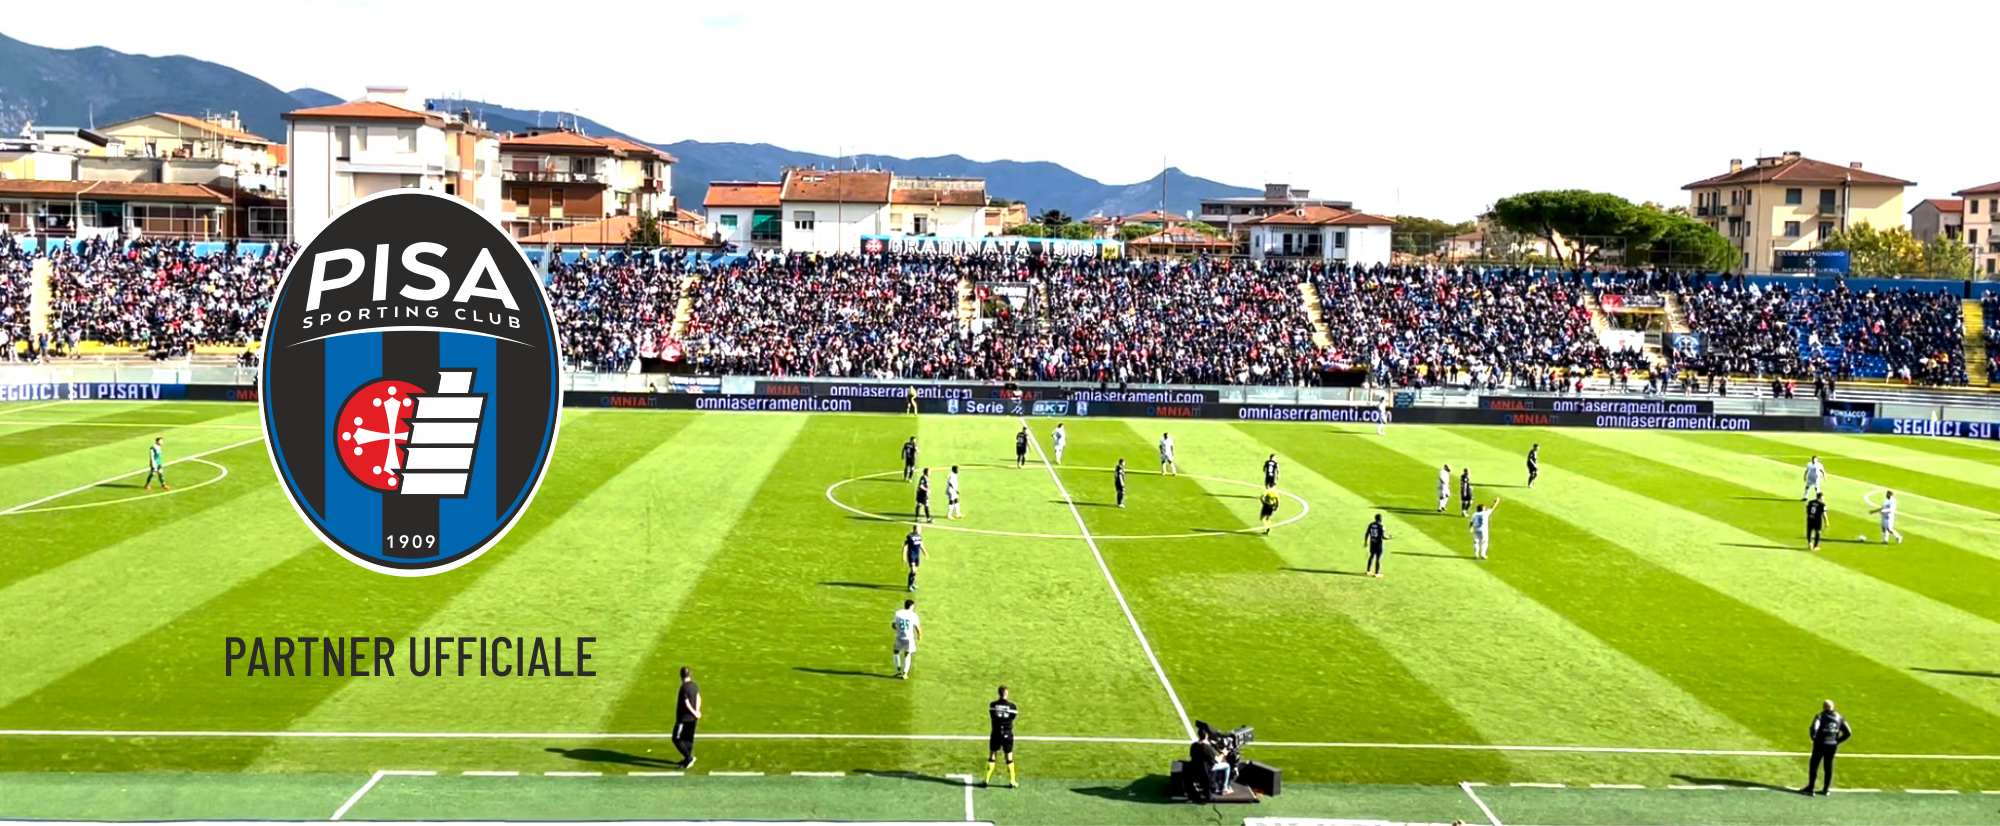 OMNIA è partner ufficiale Pisa Sporting Club 2021-2022 NOVITÀ 